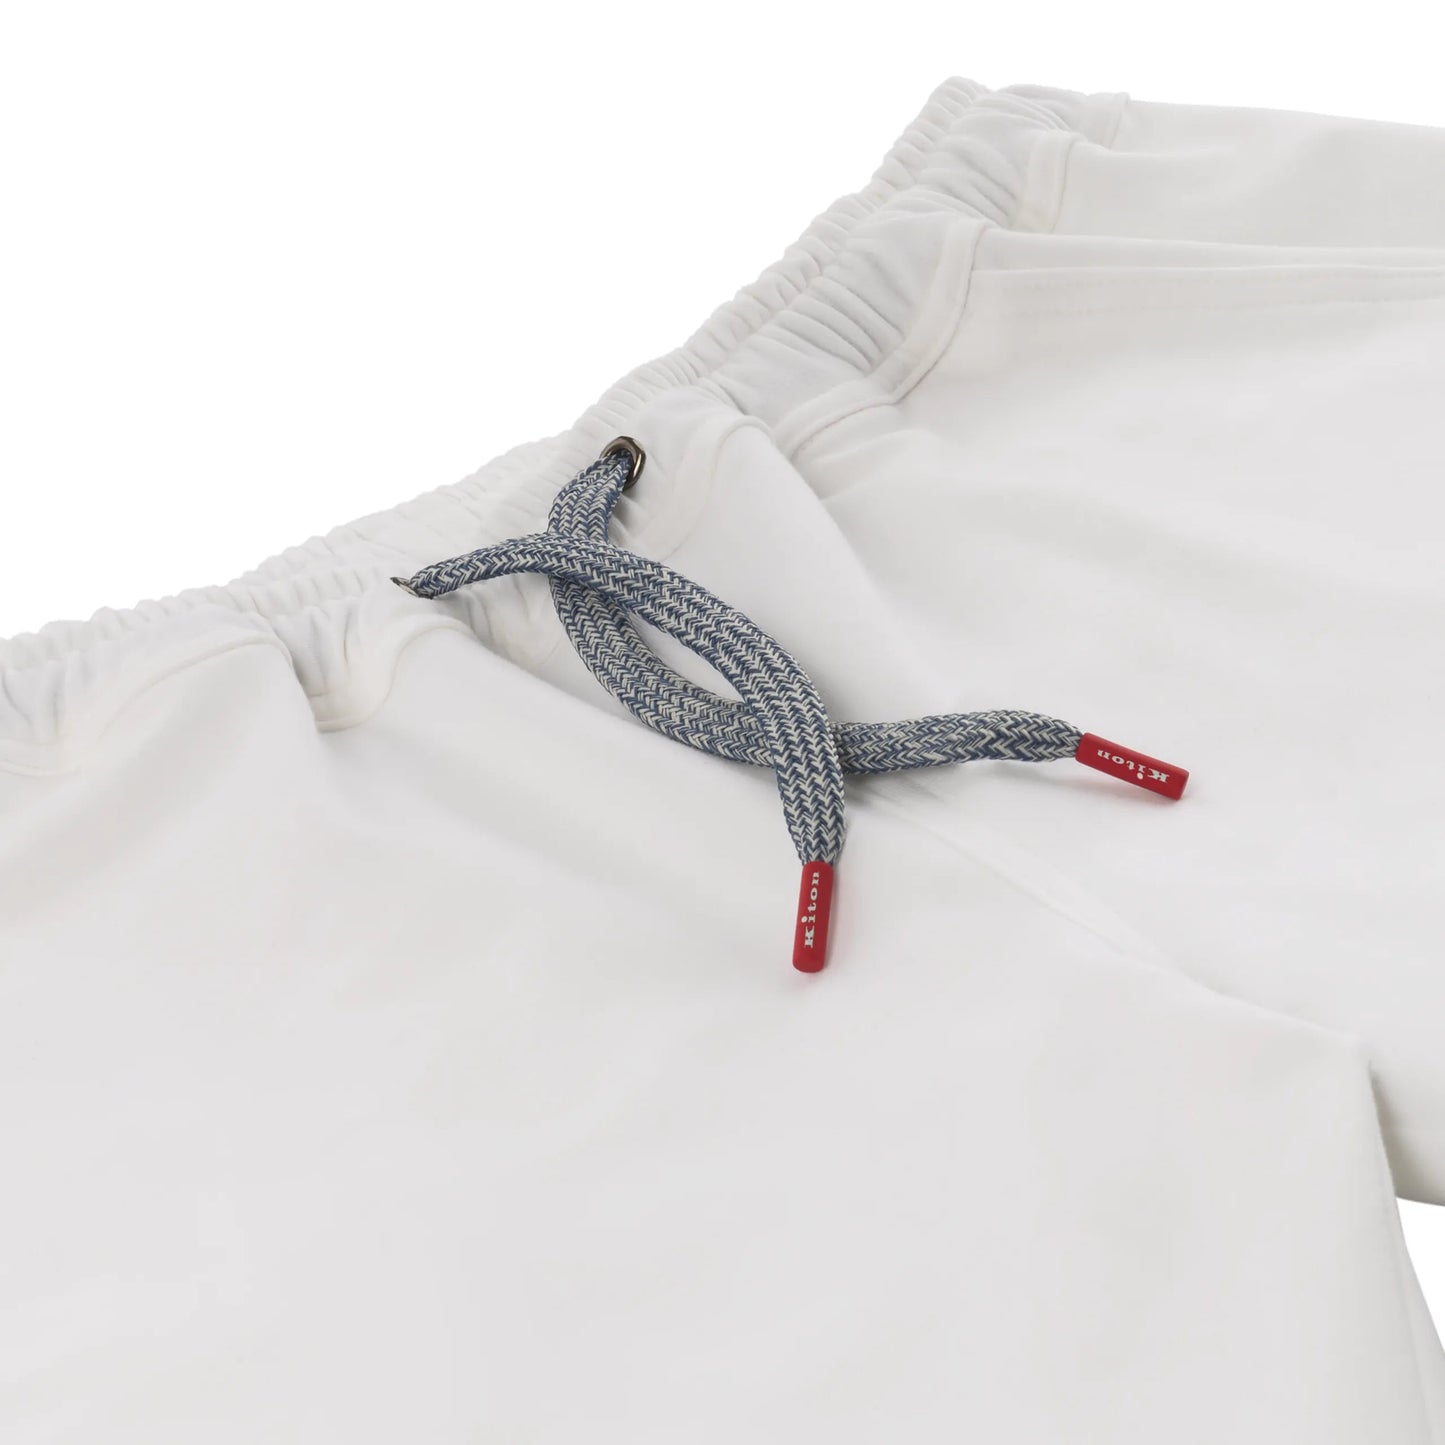 Kiton Cotton Sport Shorts in White - SARTALE